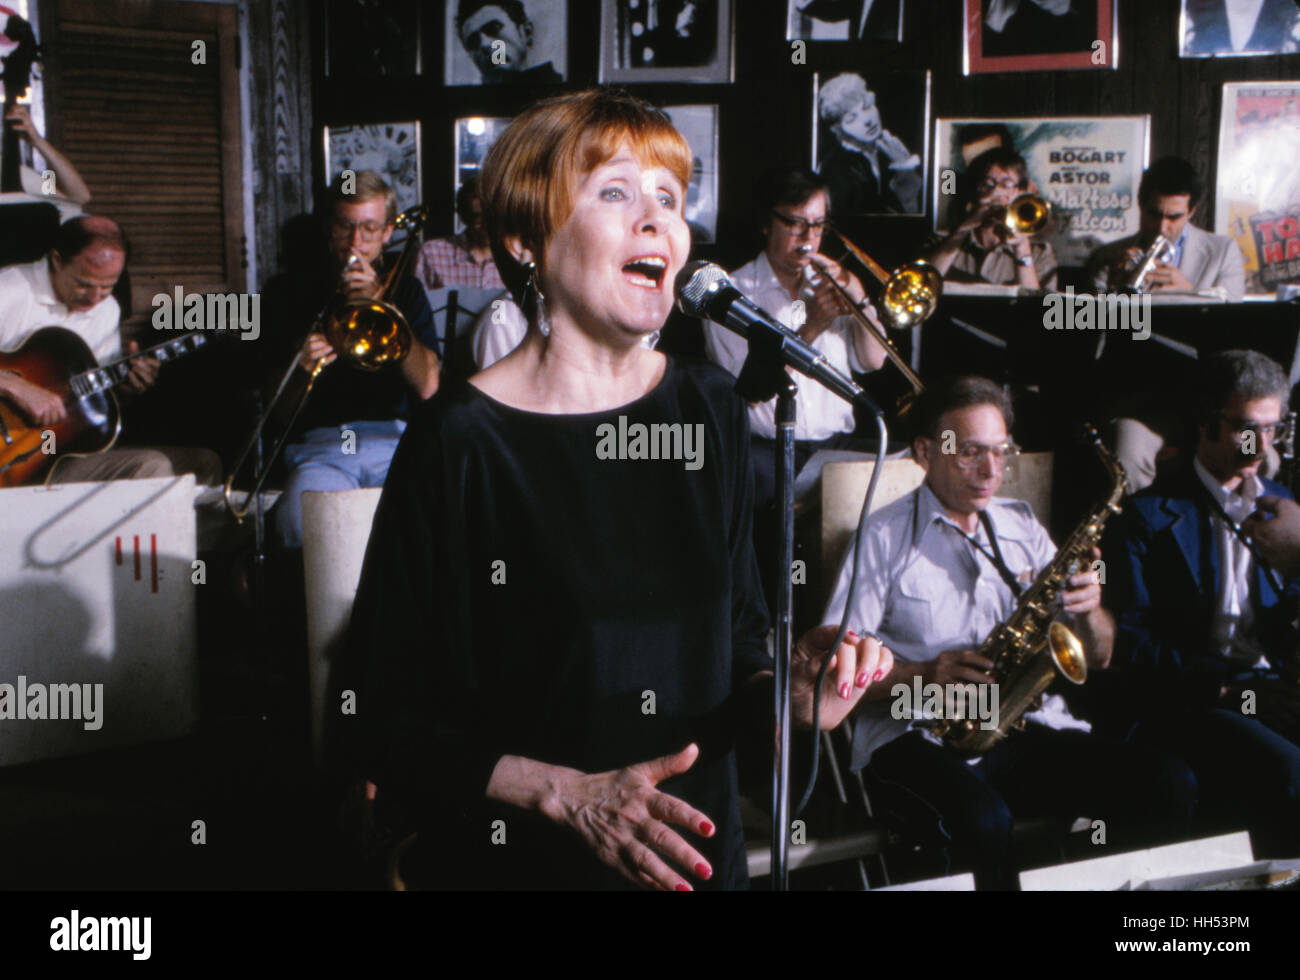 Sängerin Barbara Lea, während eines Auftritts im roten Blazer zu jazz-Club in New York City im Jahr 1982. Stockfoto